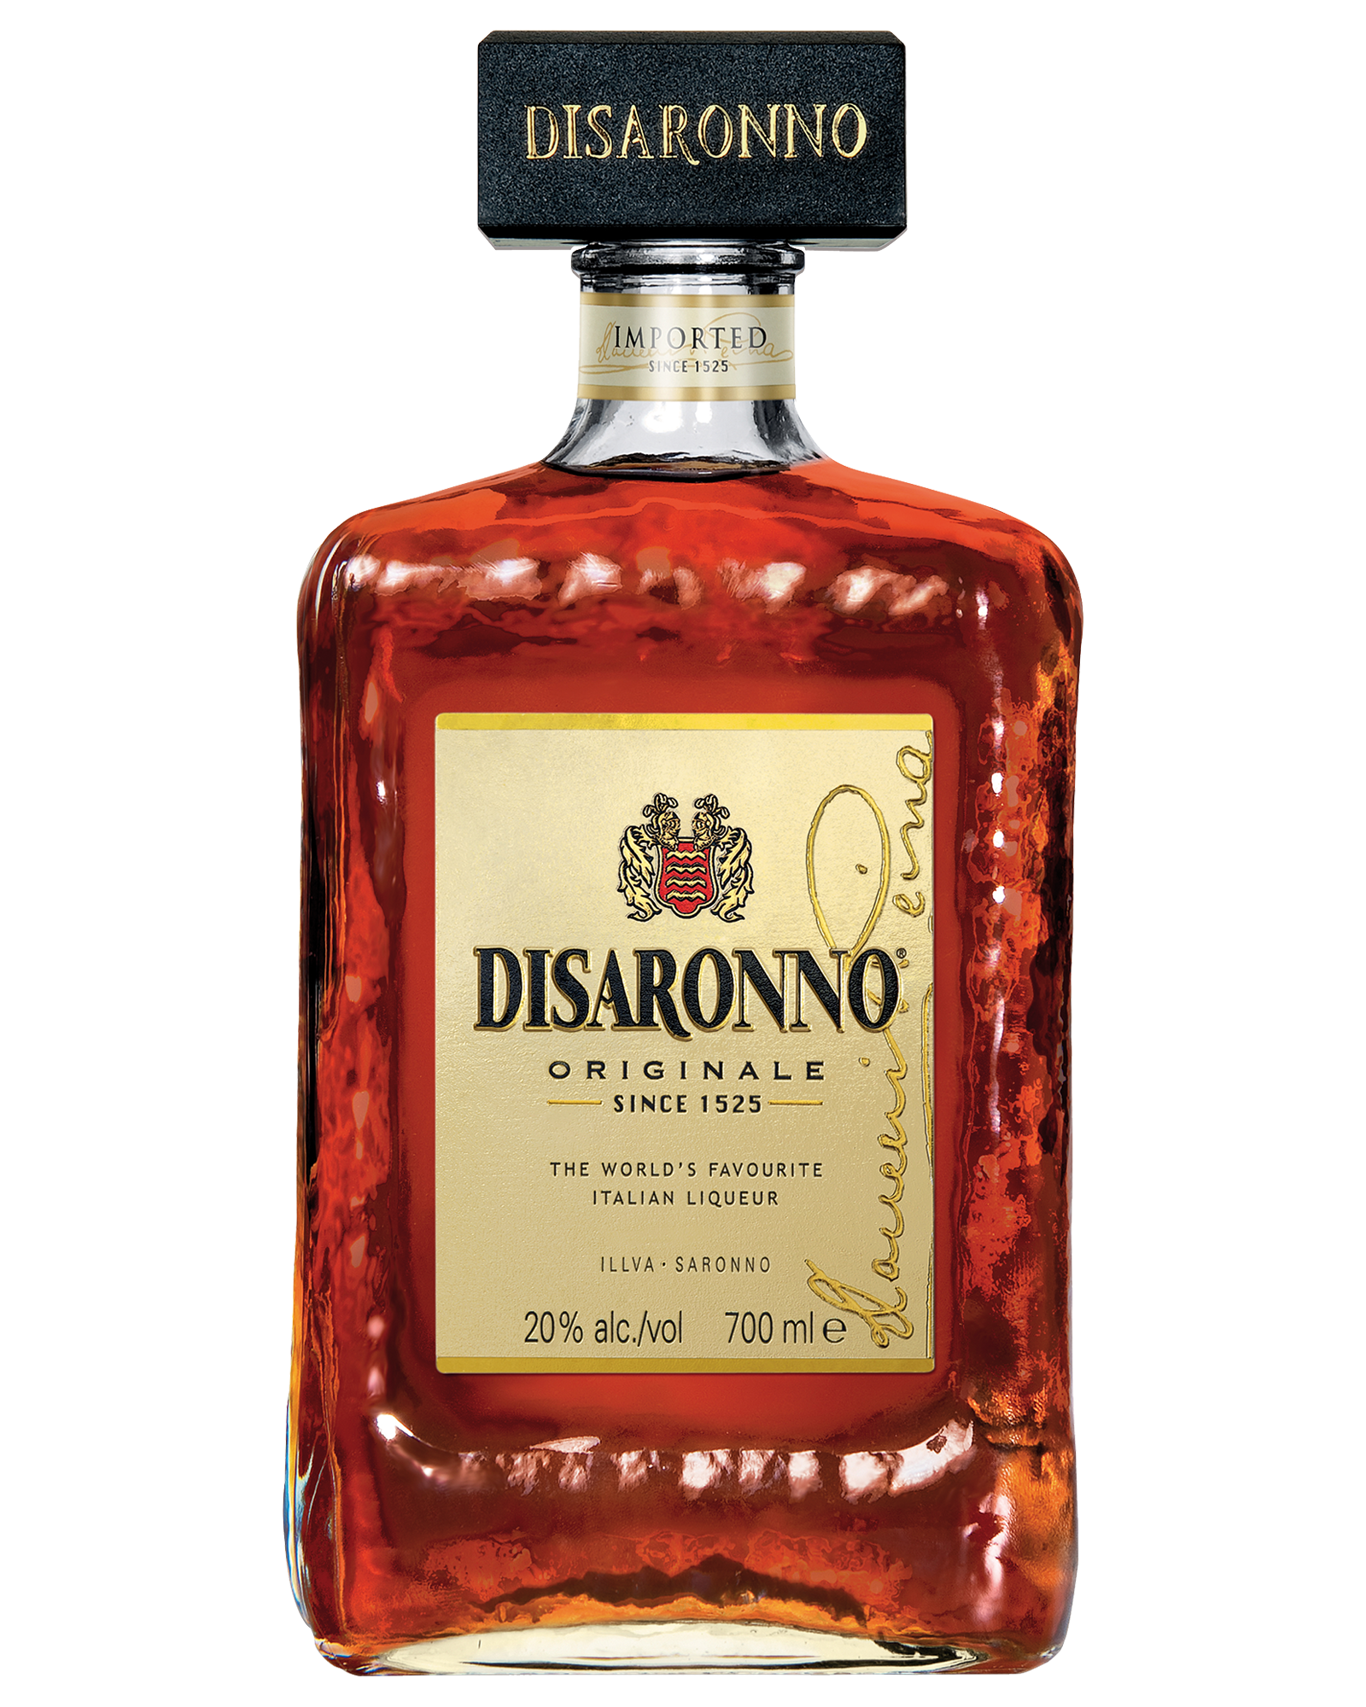 Disaronno Bottle Background PNG Image